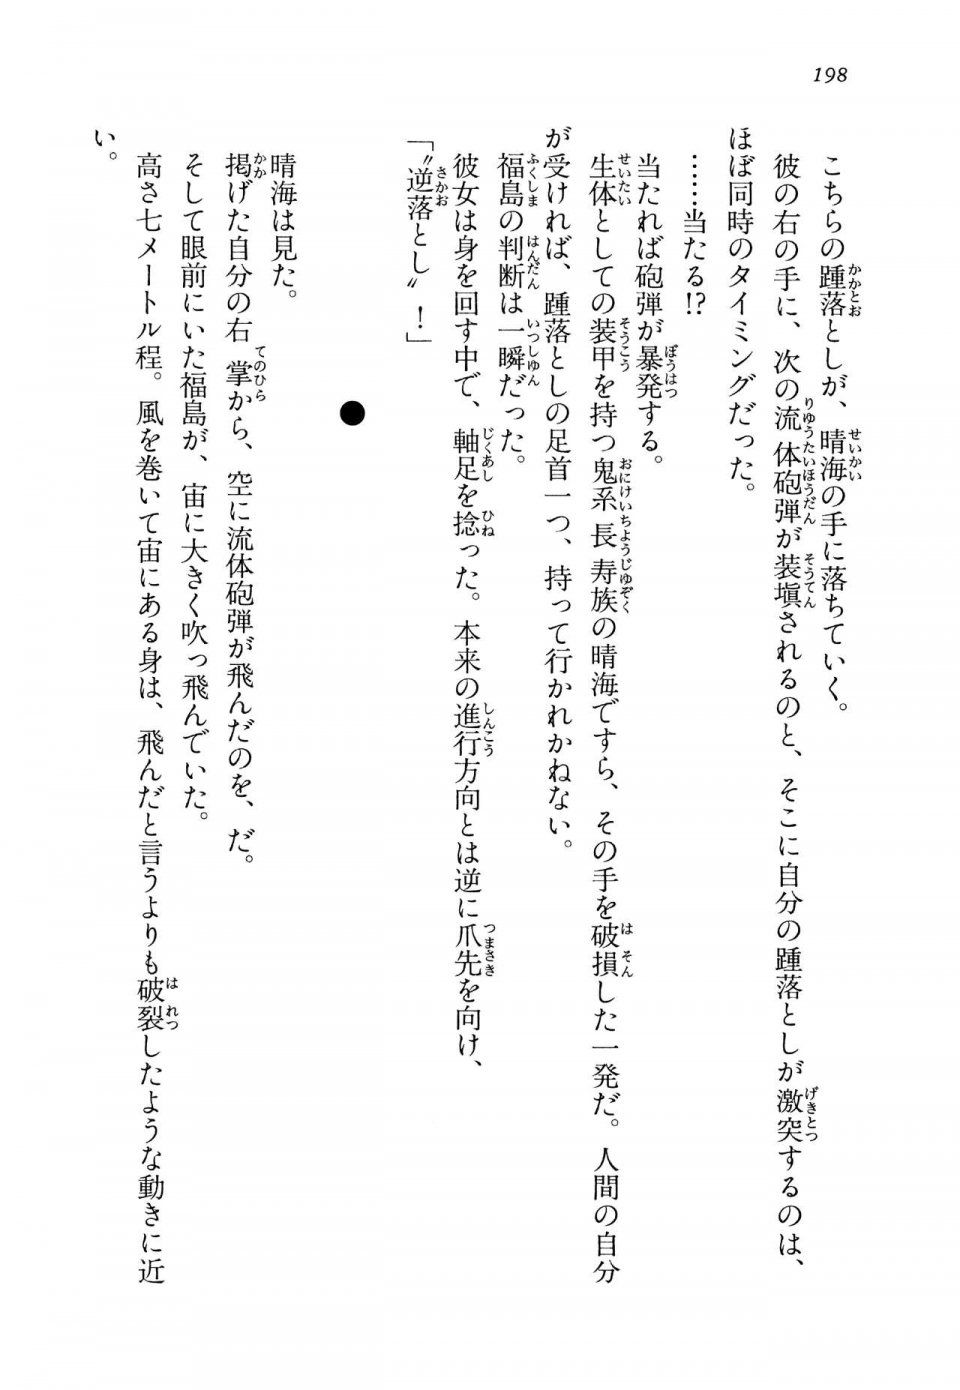 Kyoukai Senjou no Horizon LN Vol 14(6B) - Photo #198